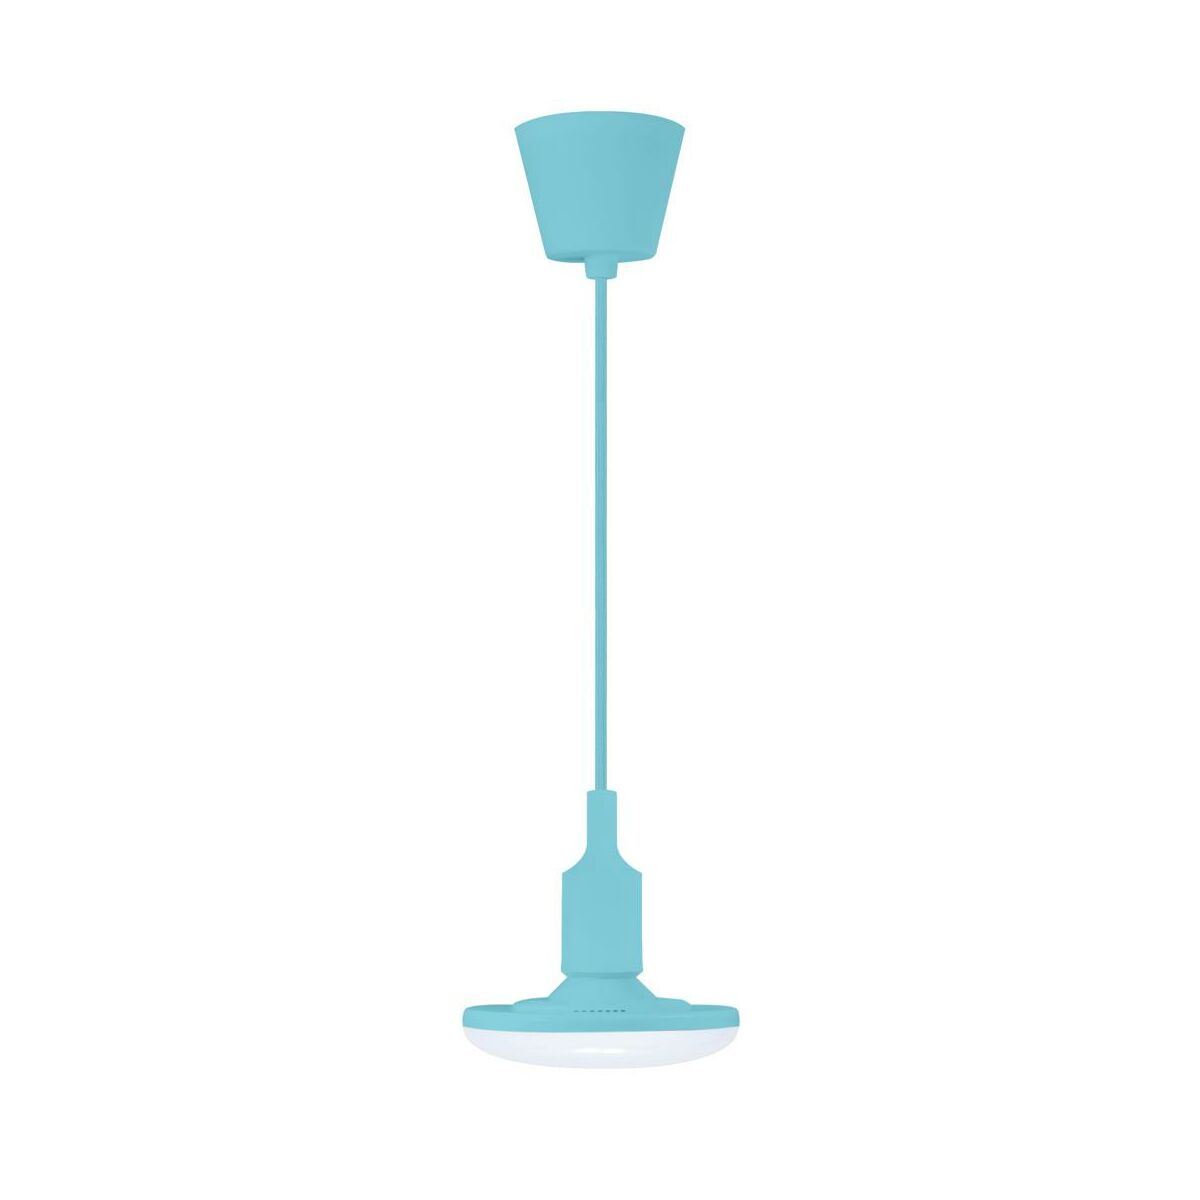 Lampa wisząca Kiki niebieska 850 lm E27 Polux